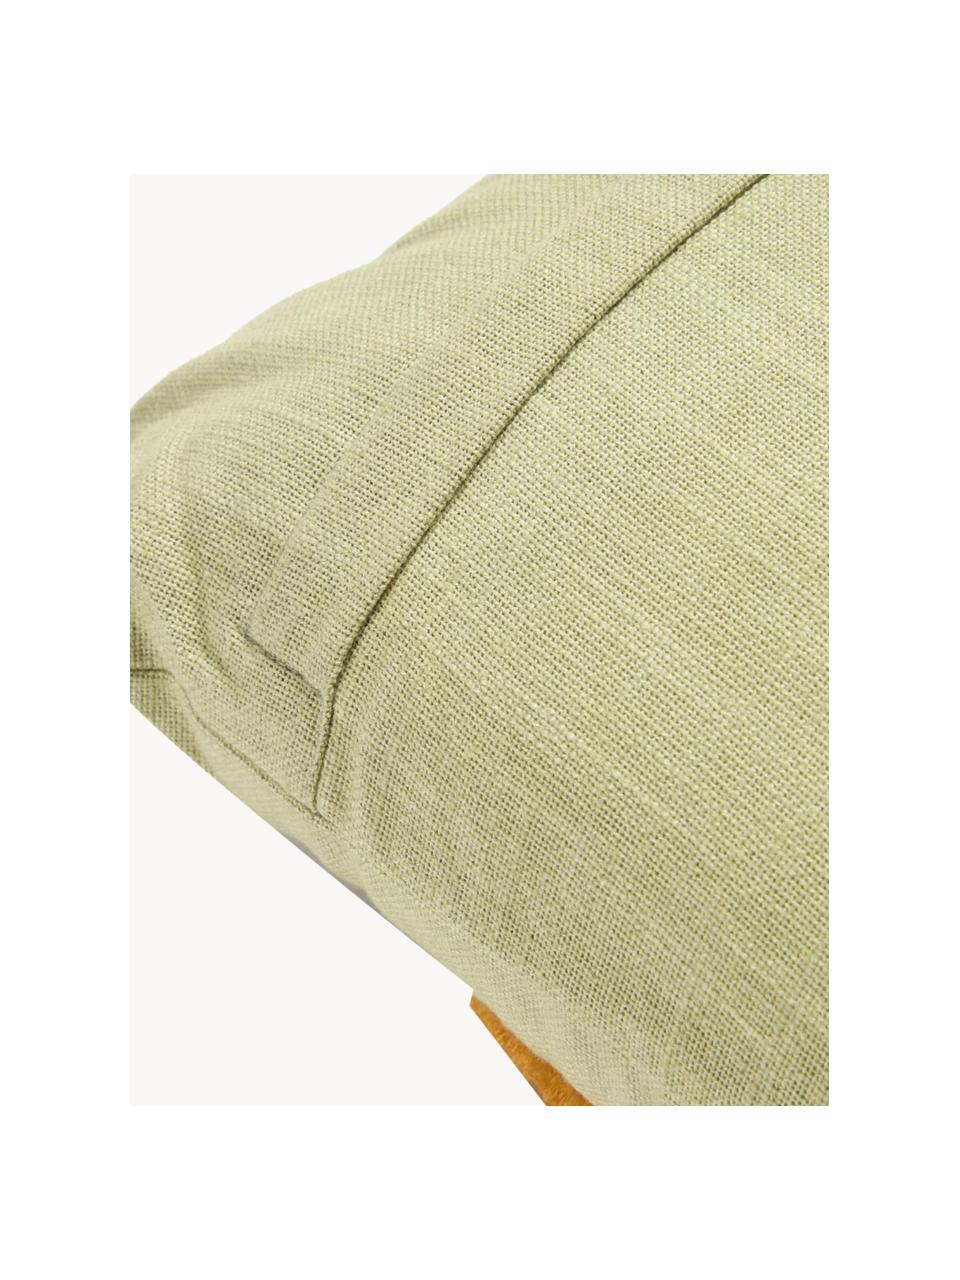 Poszewka na poduszkę z wypukłą strukturą Amarantha, 50% bawełna, 50% akryl, Szałwiowy zielony, wielobarwny, S 45 x D 45 cm